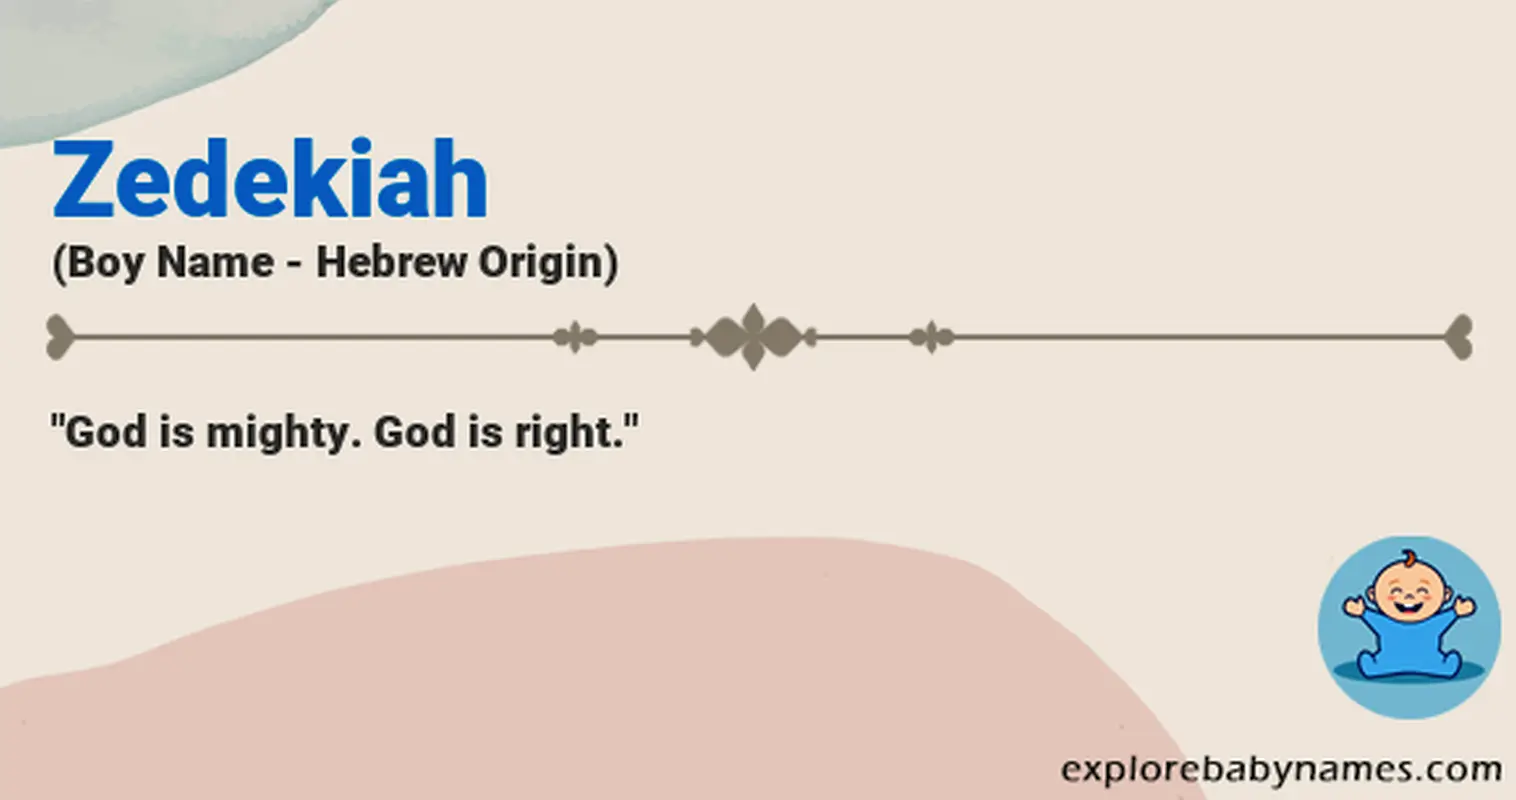 Meaning of Zedekiah